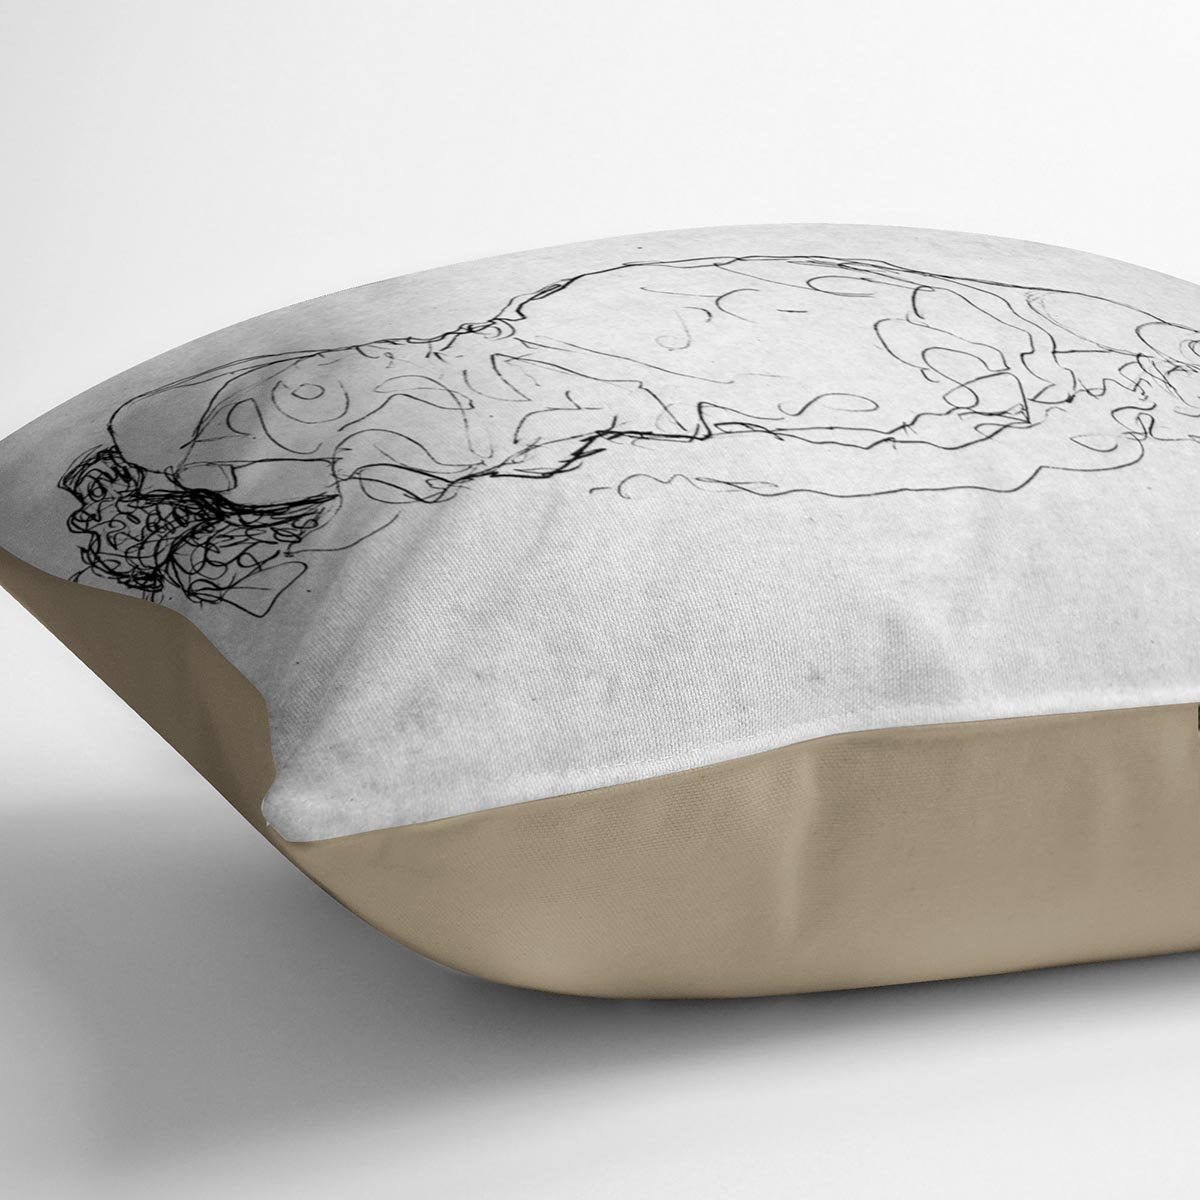 Liegende back figure by Klimt Throw Pillow